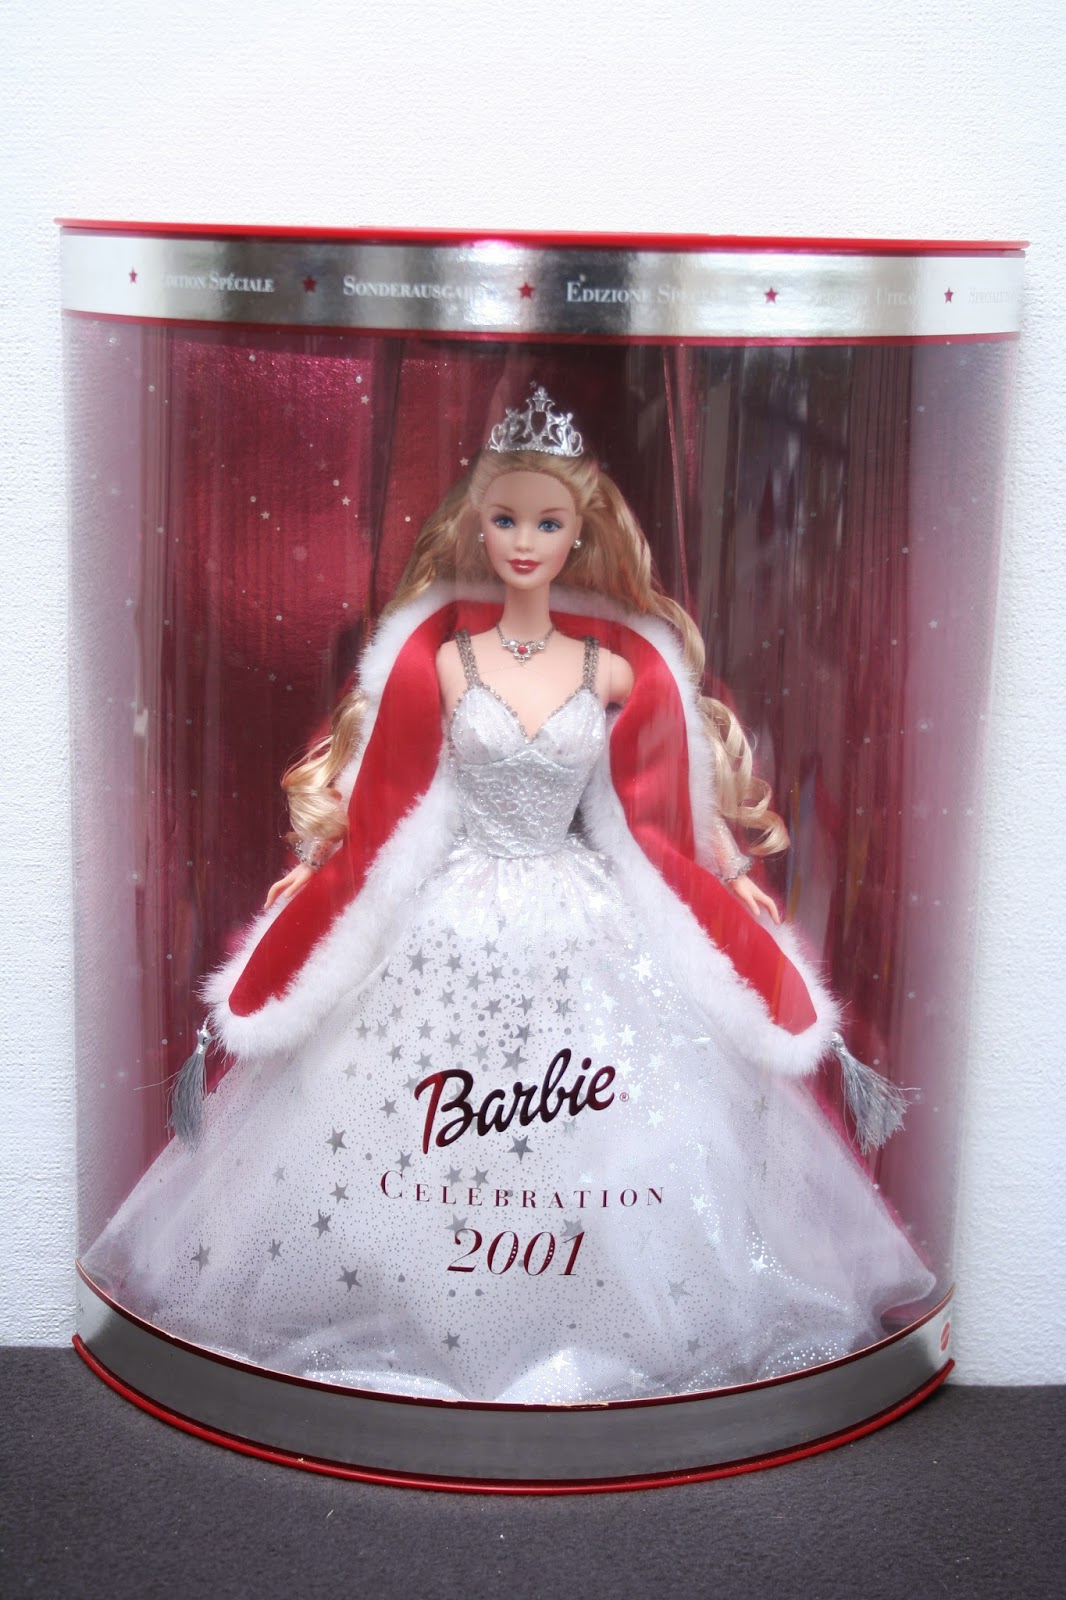 Les poupées Barbies de Veraker: Barbie édition spéciale Célébration 2001